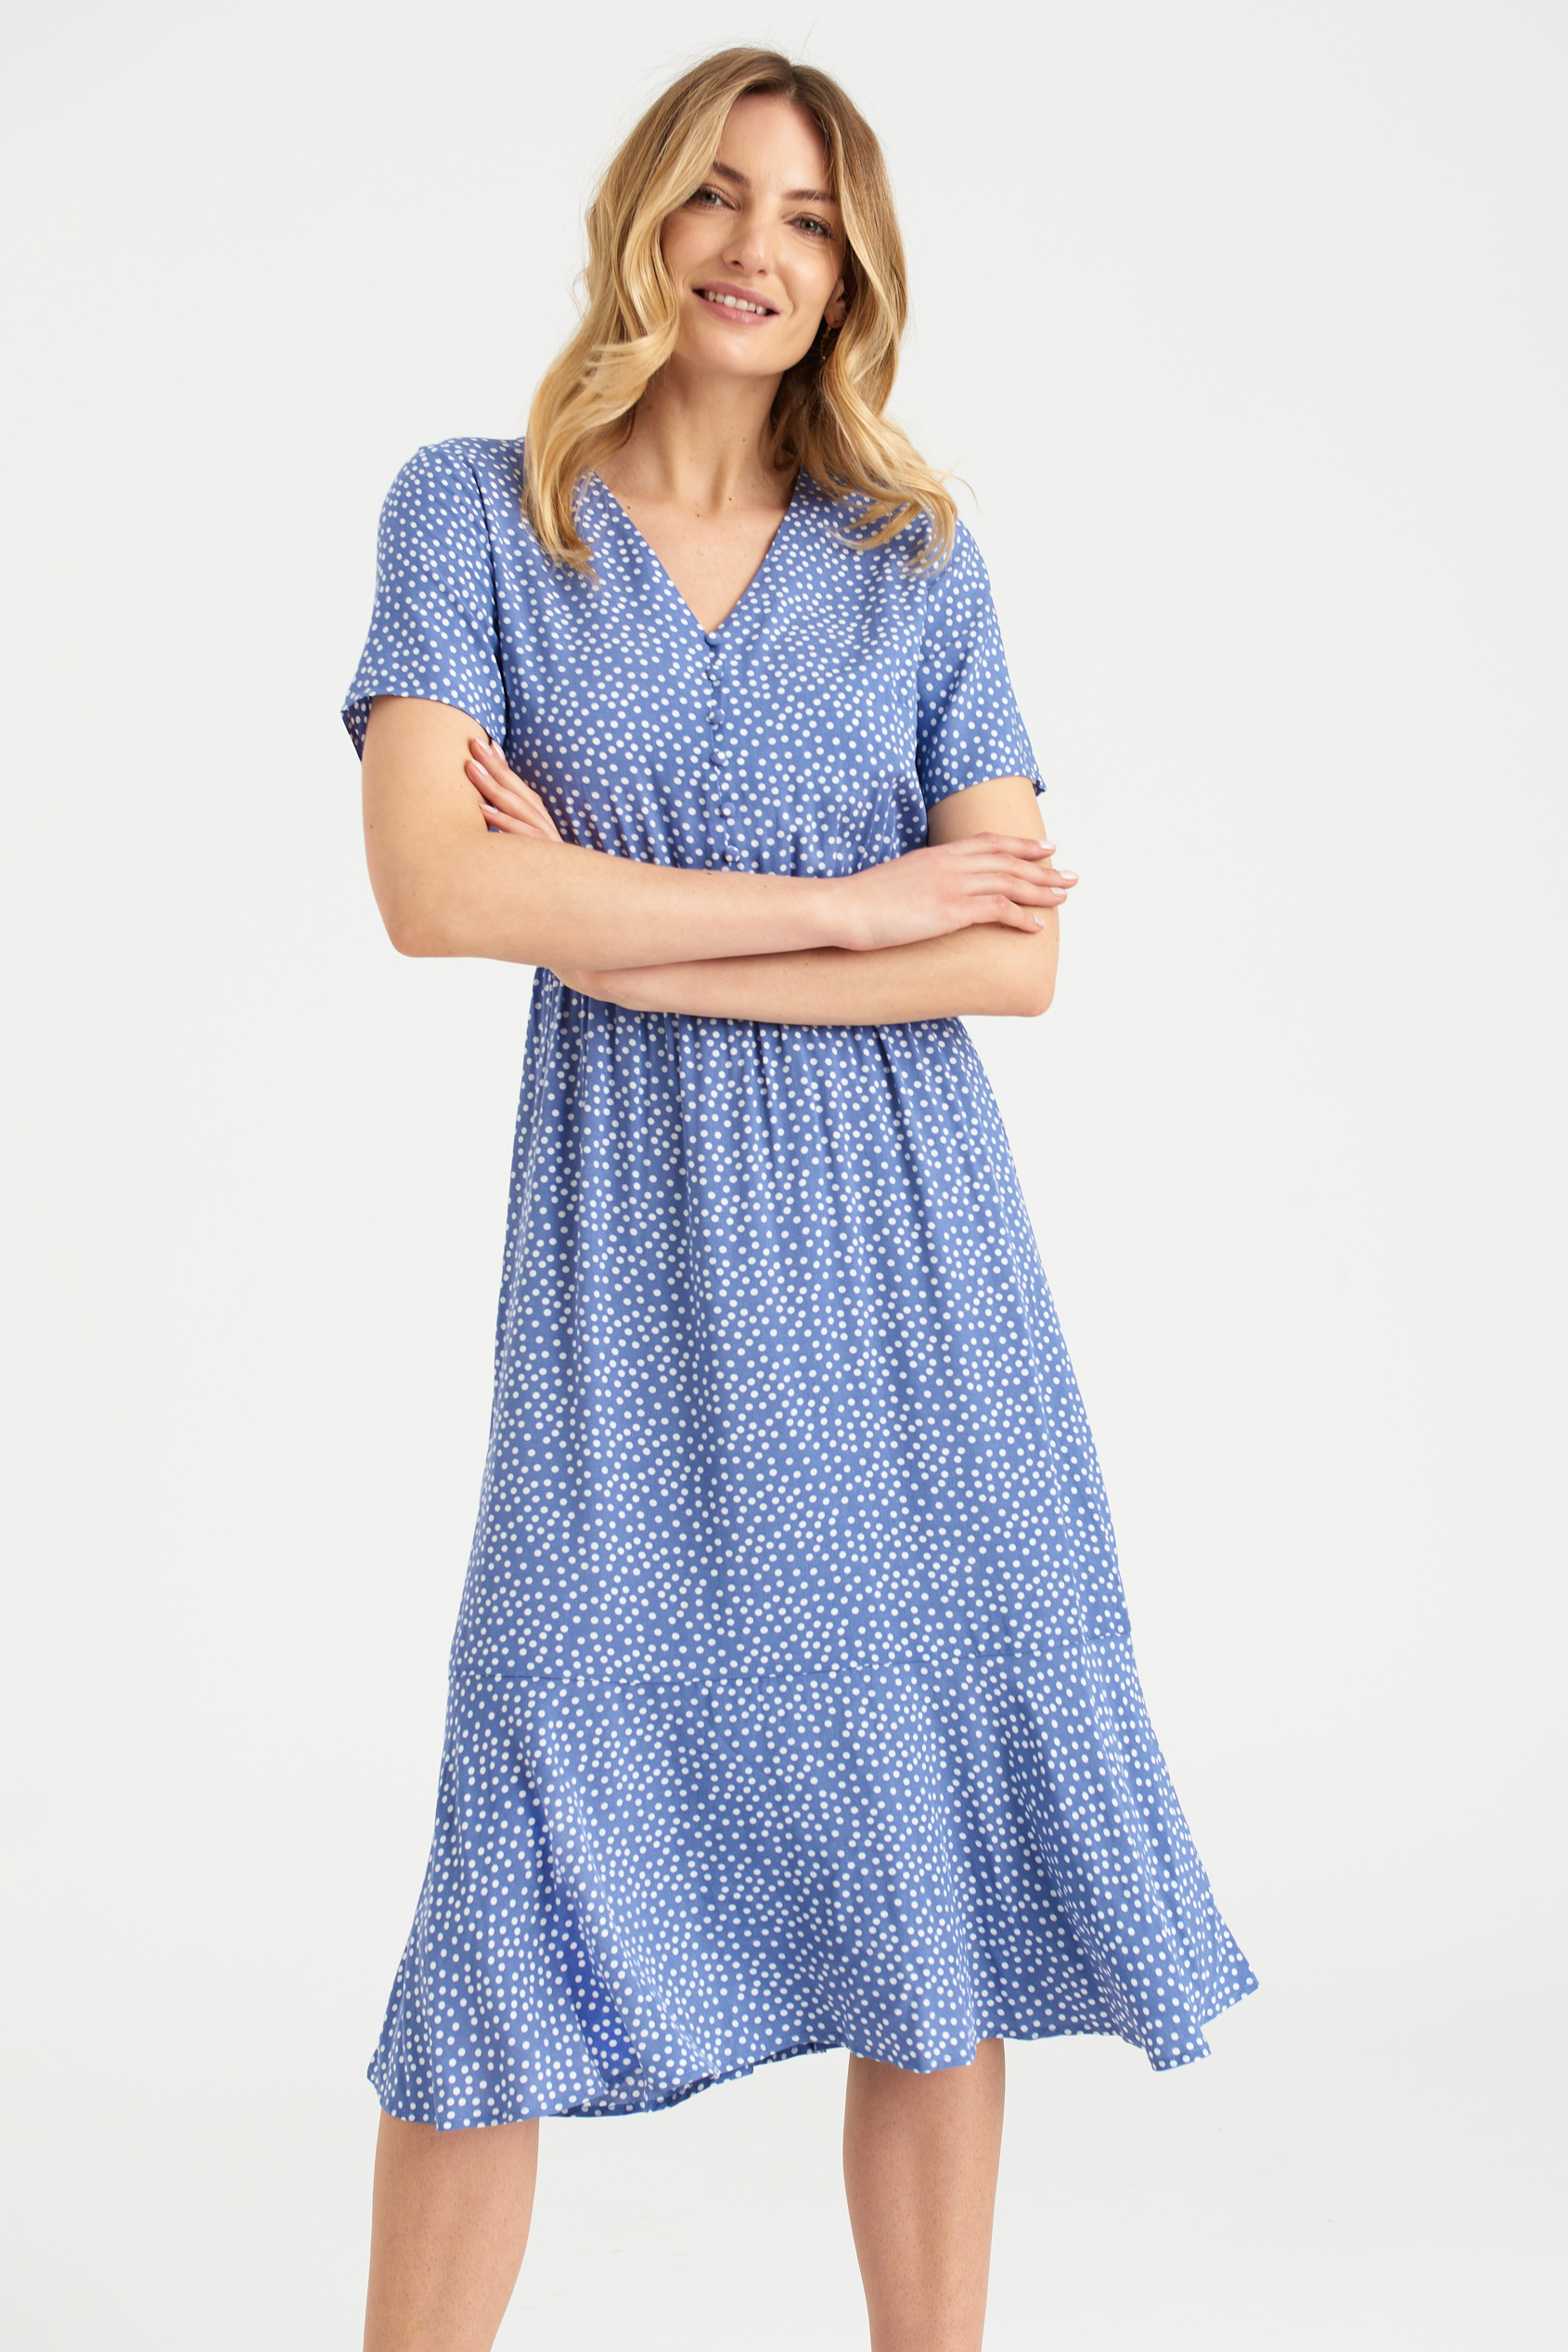 Błękitna sukienka z wiskozy, nadruk w drobne groszki